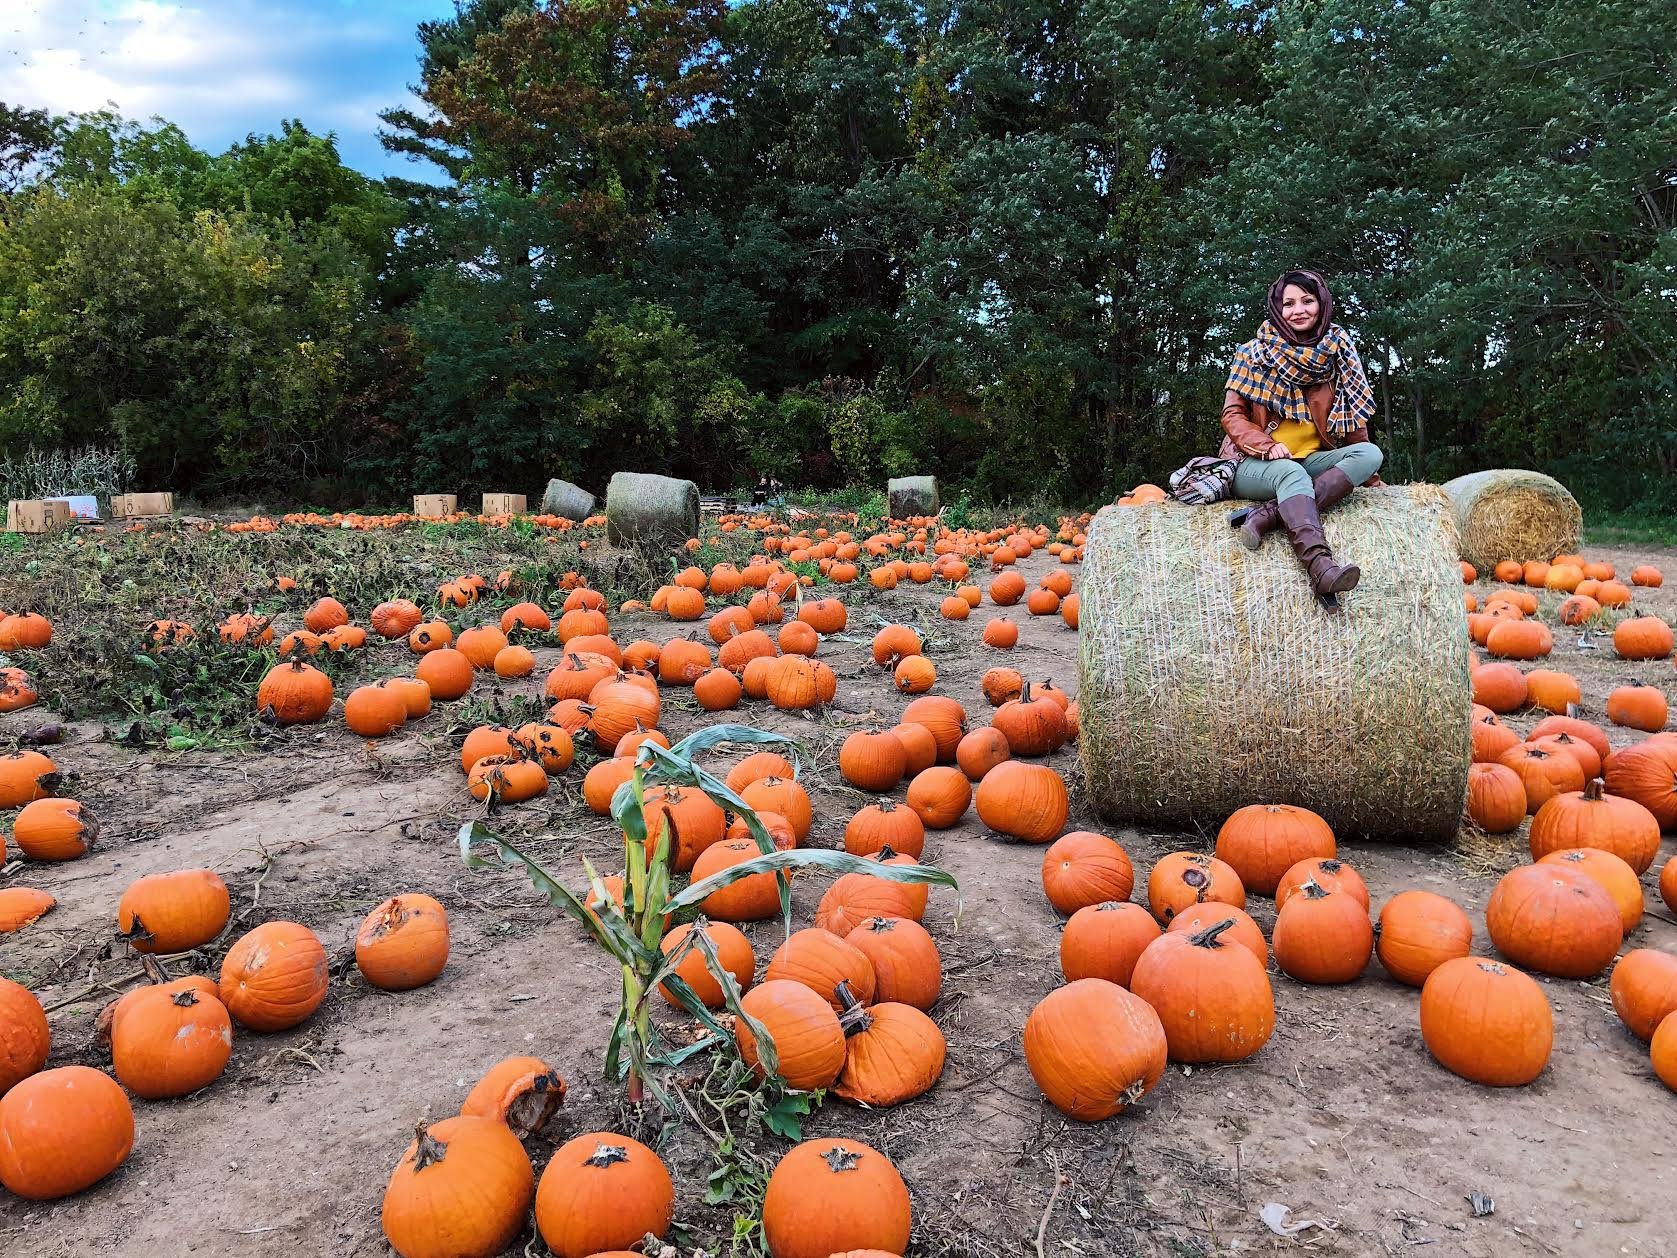 Muslim-travel-New-England-fall-activities-pumpkin-patch-visit